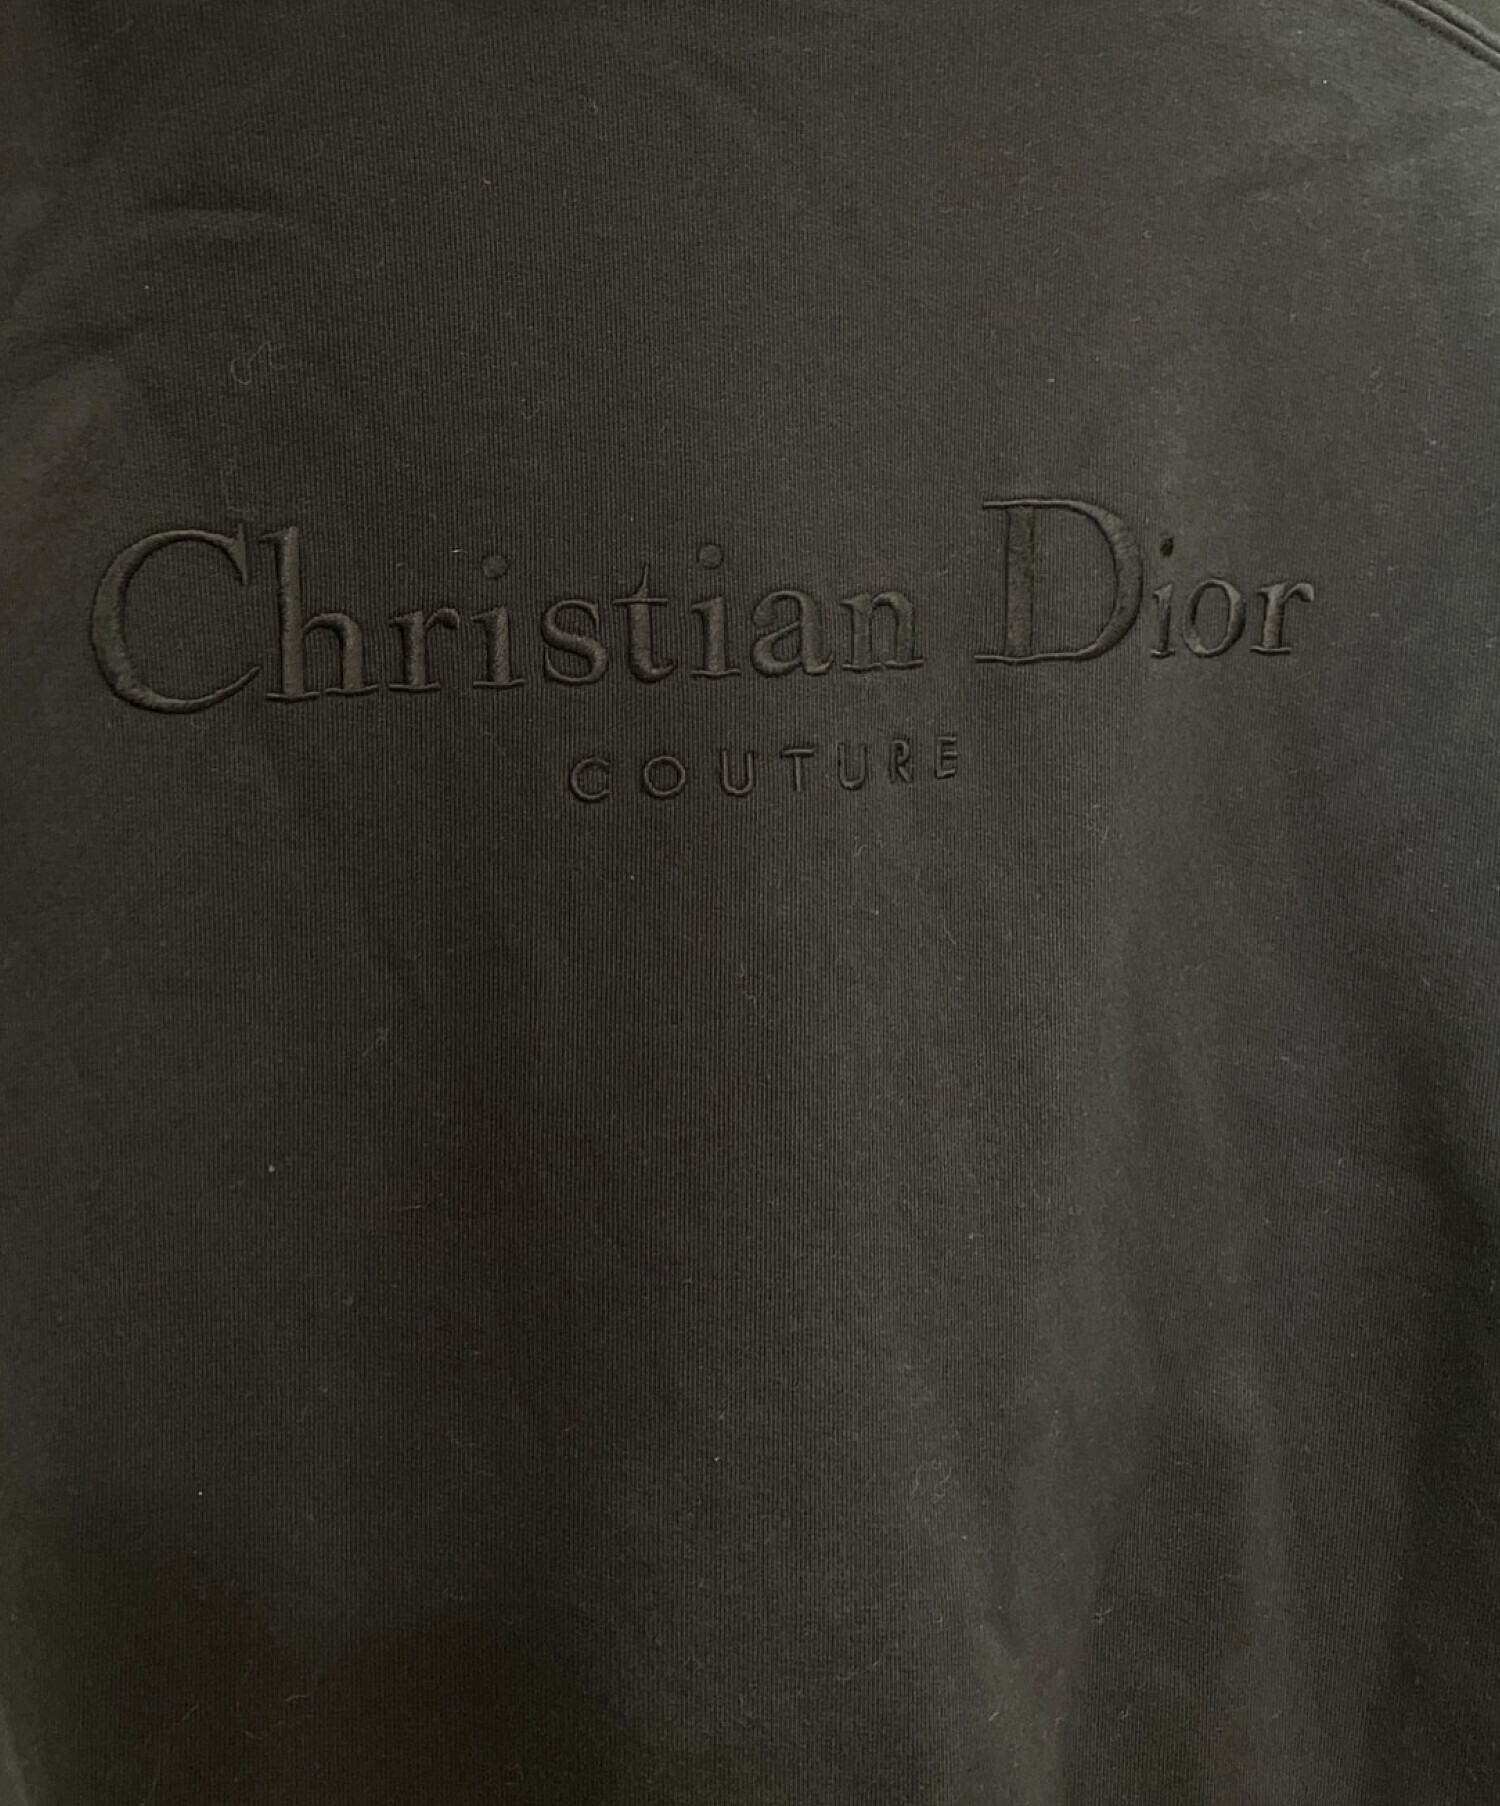 Christian Dior (クリスチャン ディオール) ロゴリバーシブルフーディー ネイビー×ブラック サイズ:M